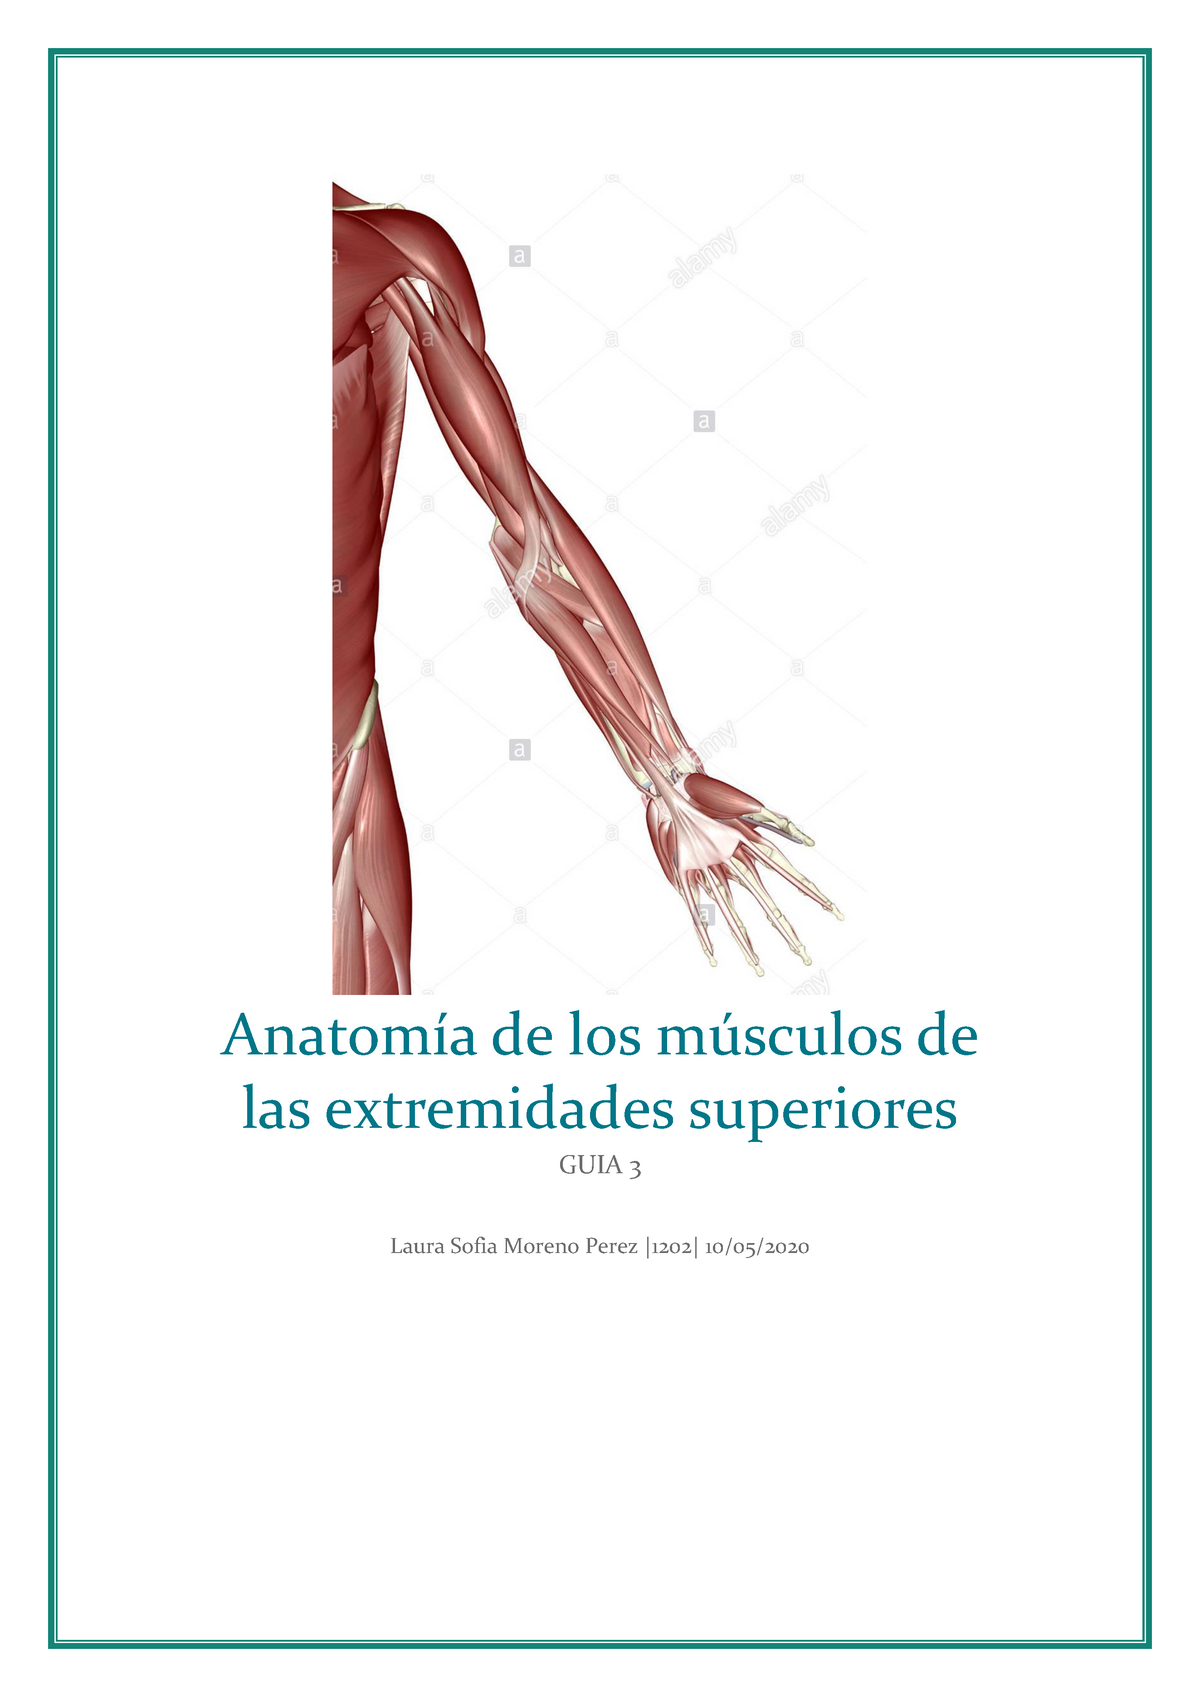 Guia 3 Miembros Superiores Moreno Perez Laura Sofia Anatomía De Los Músculos De Las 0273